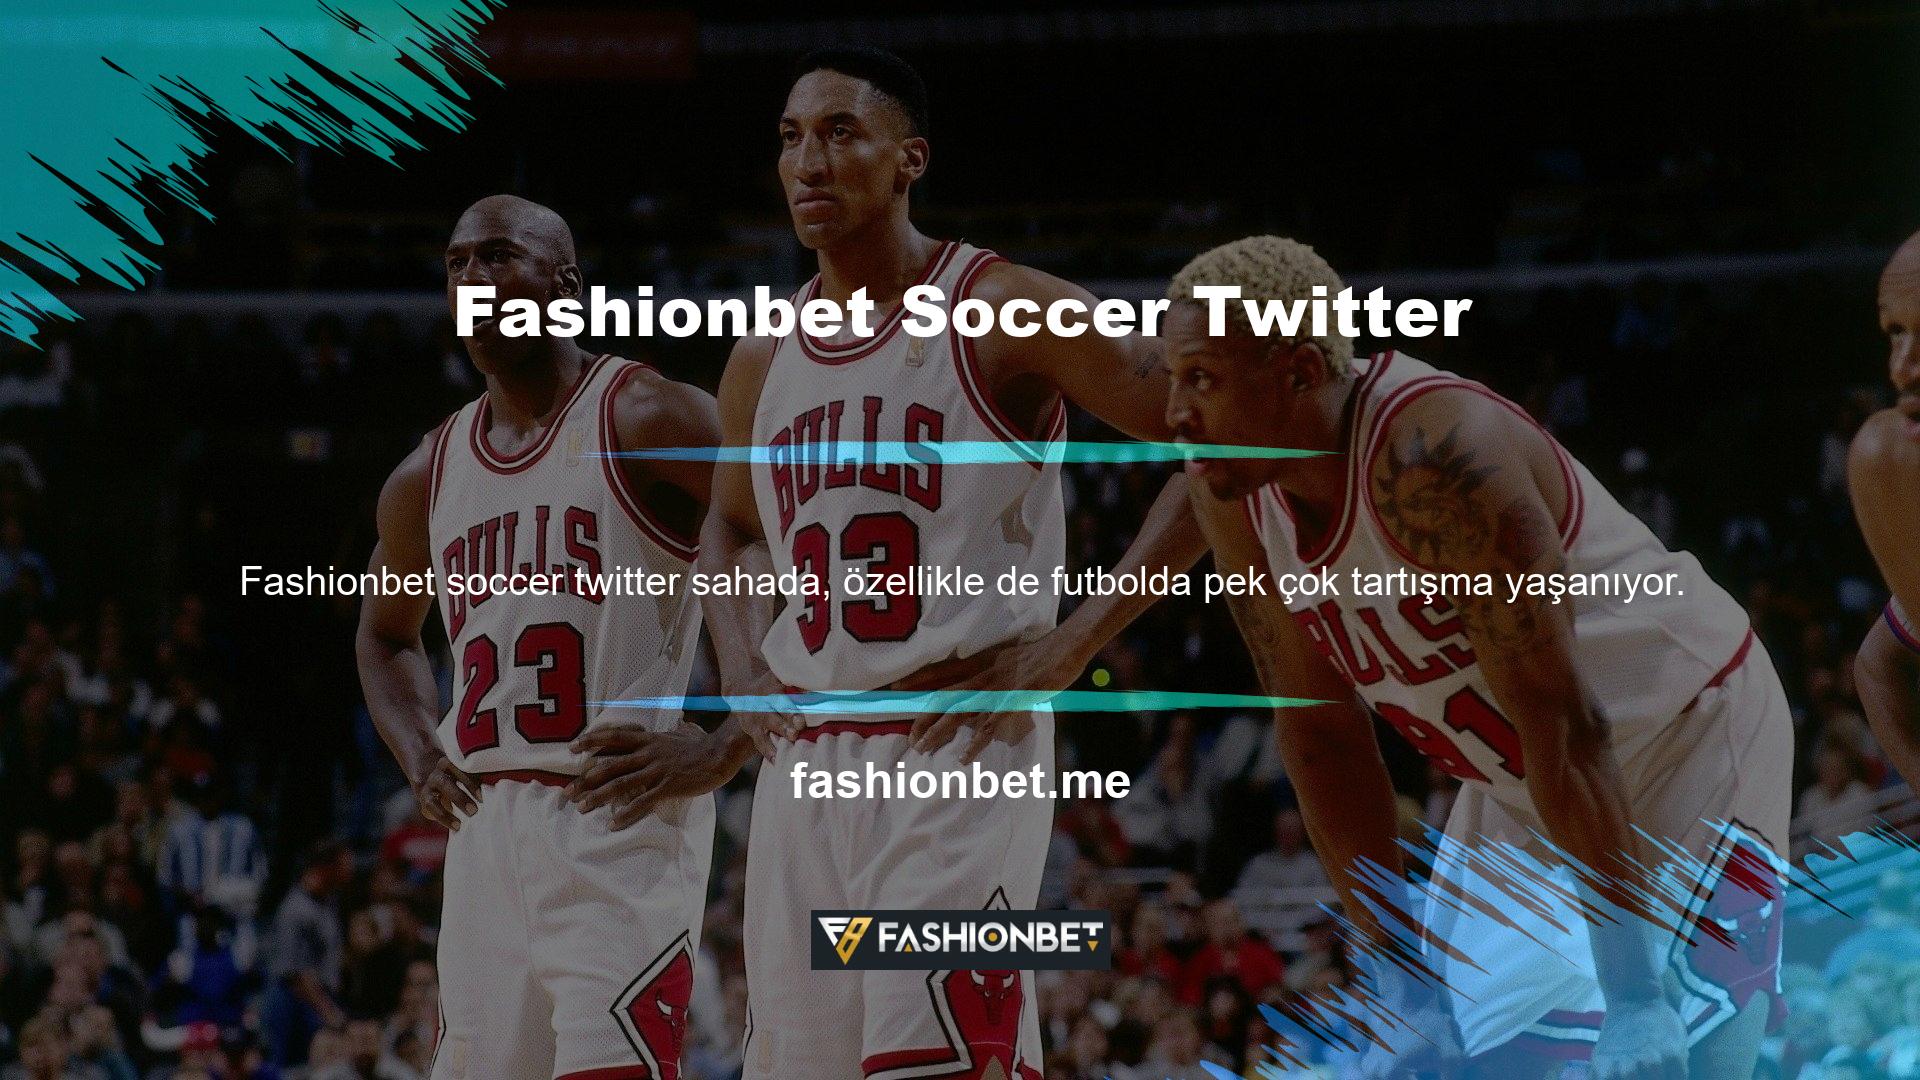 Ayrıca Fashionbet futbol Twitter koleksiyonuna ve yönlendirme programına da göz atın